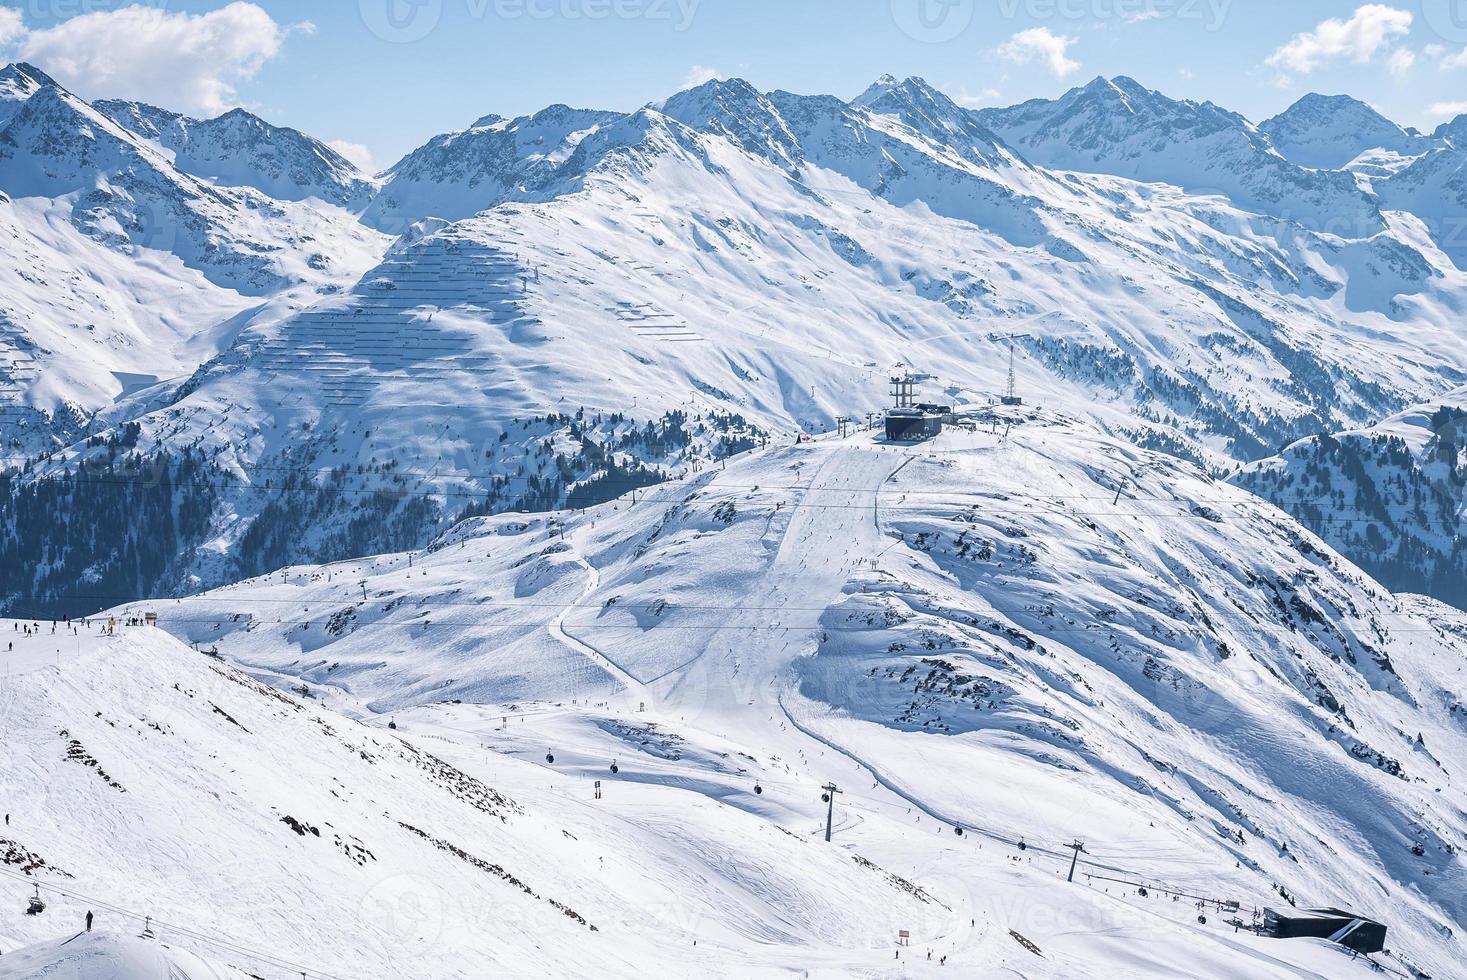 vue aérienne des remontées mécaniques et des skieurs sur la pente de la colline couverte de neige photo